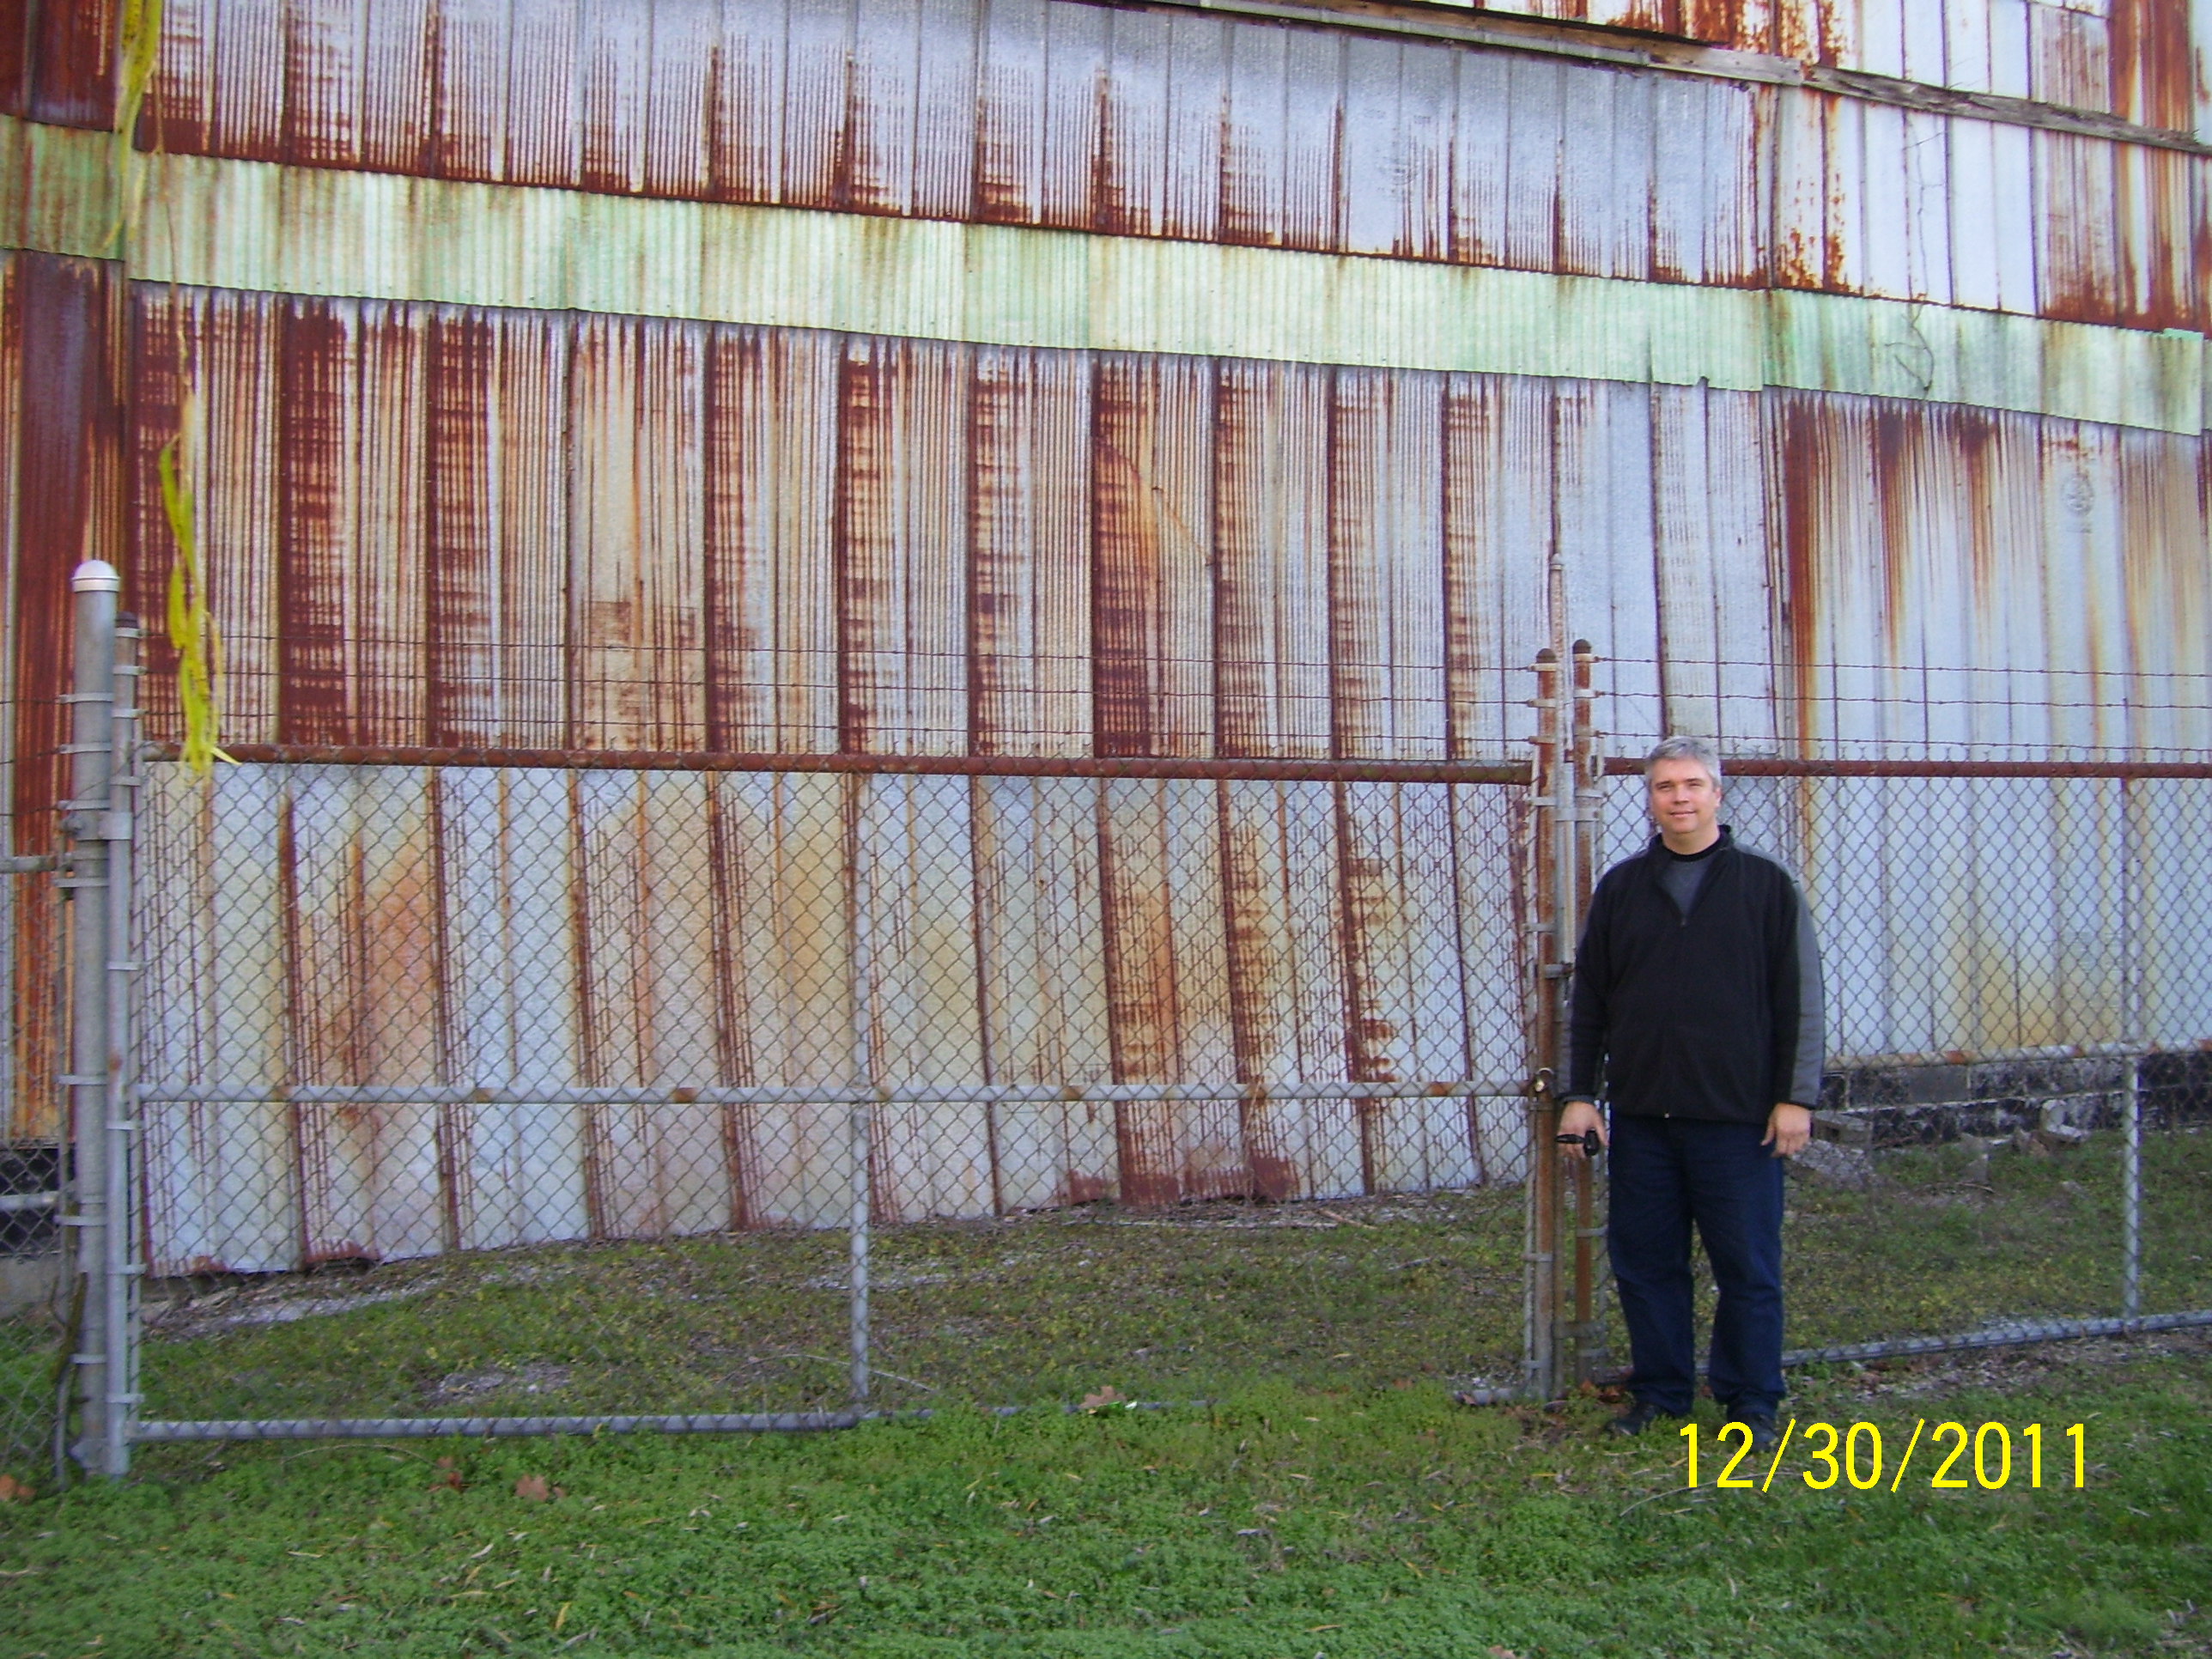 A.J. King Lumber Co. warehouse doors, Sevierville